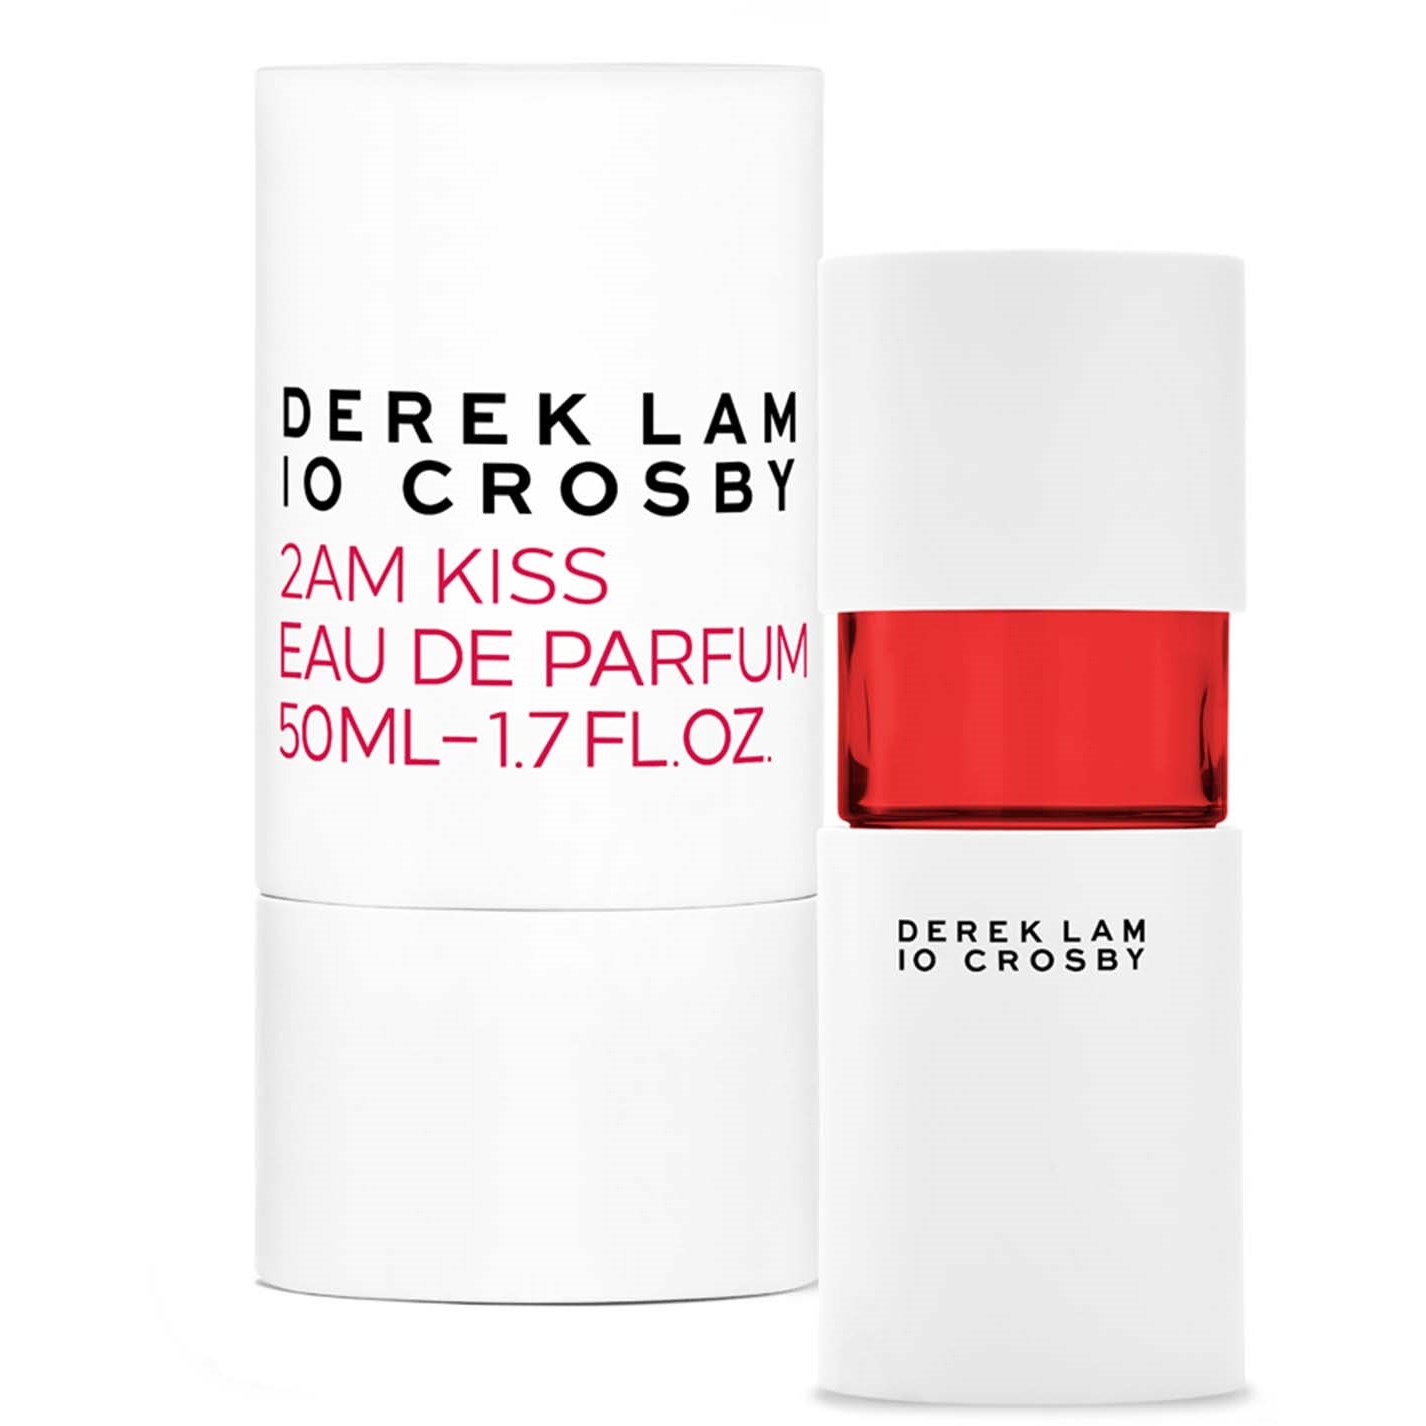 Läs mer om Derek Lam 10 Crosby 2AM Kiss Eau de Parfum 50 ml